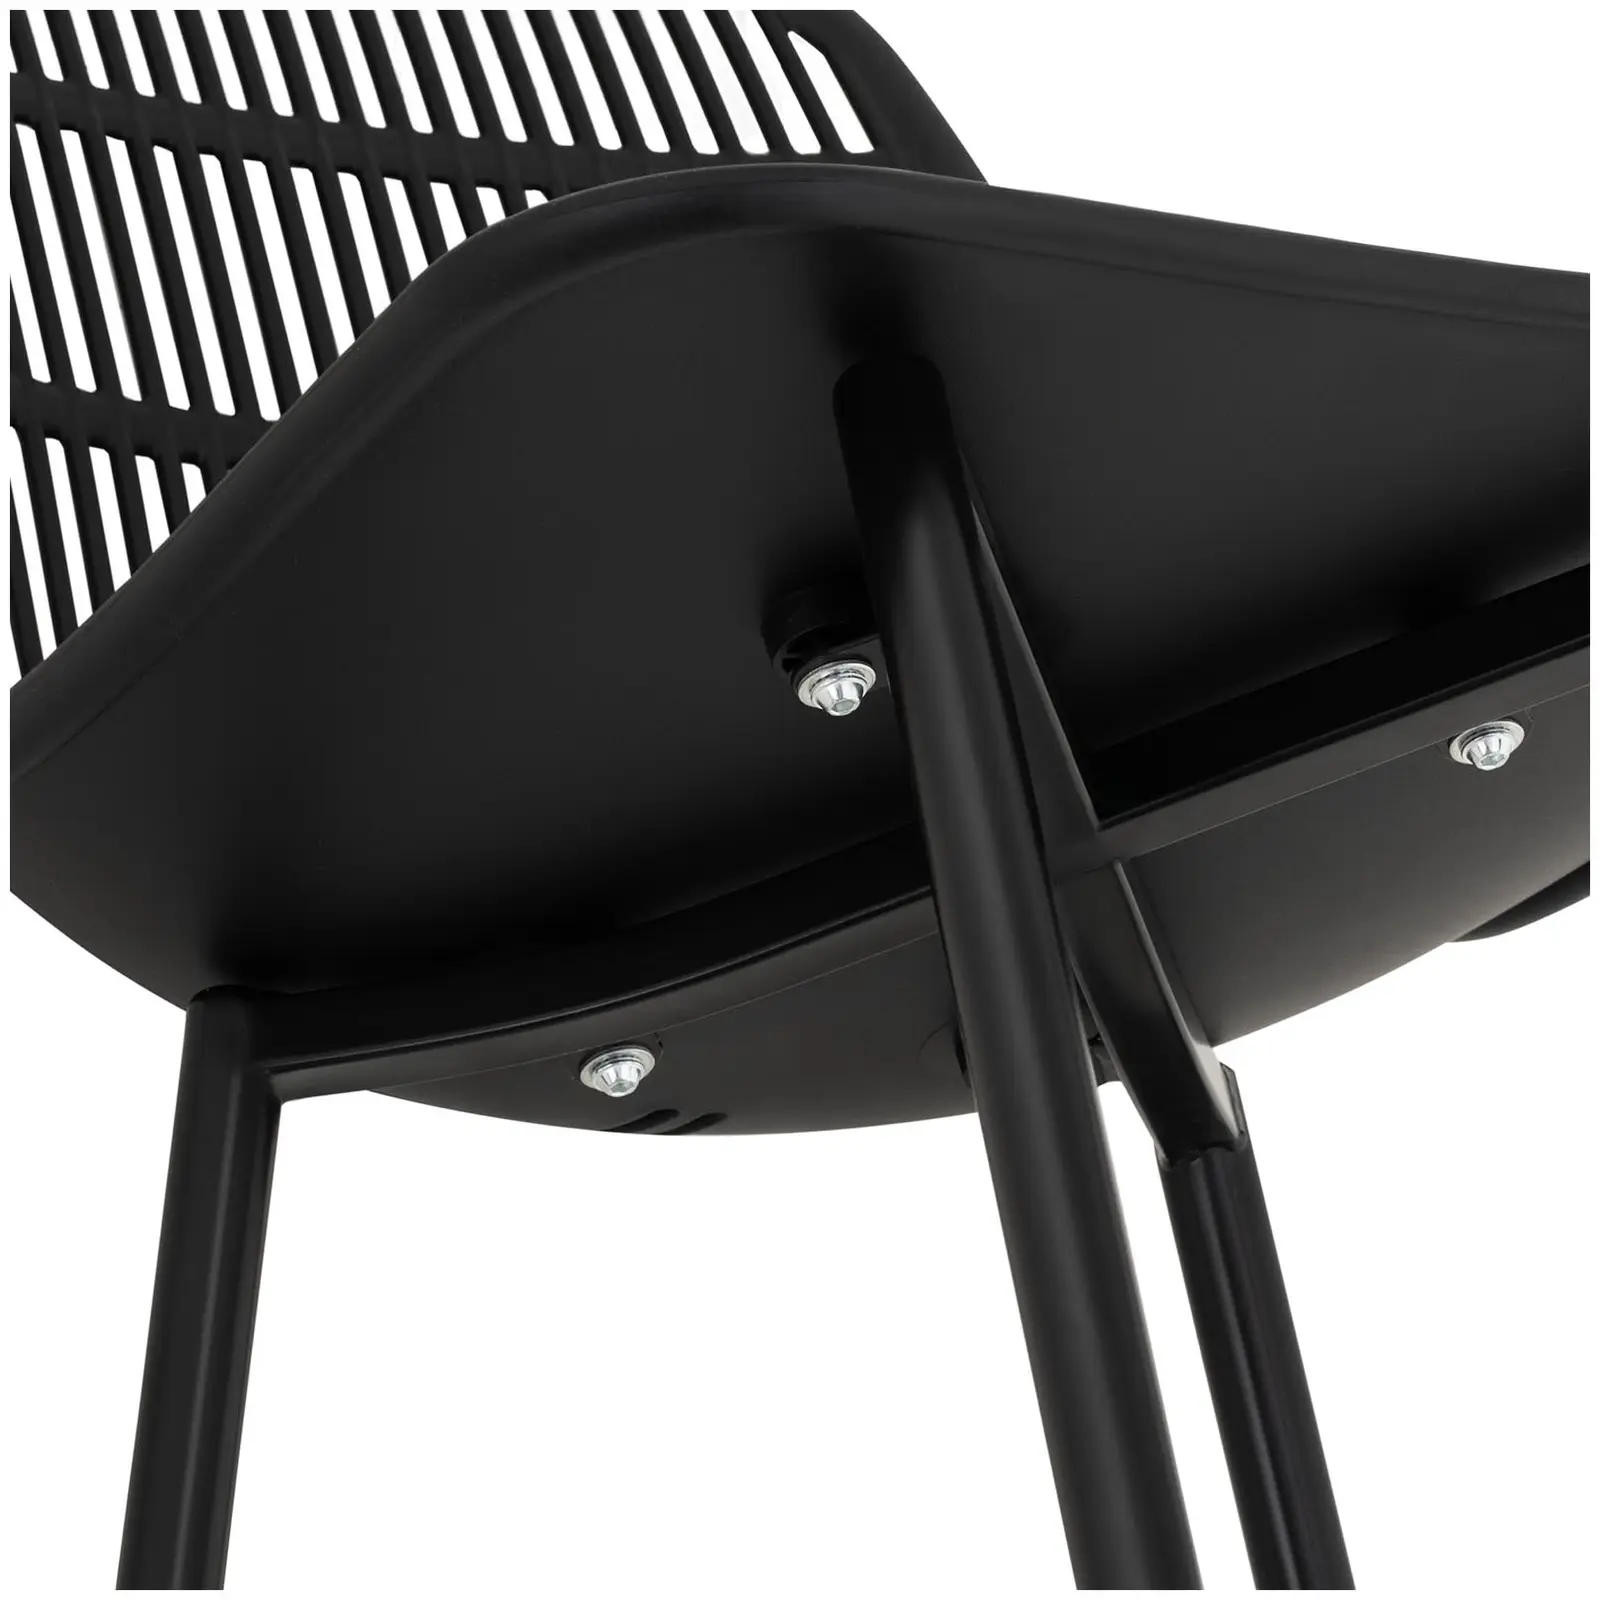 Chaise - Lot de 4 - 150 kg max. - Surface d'assise de 46,5 x 45,5 cm - Coloris noir